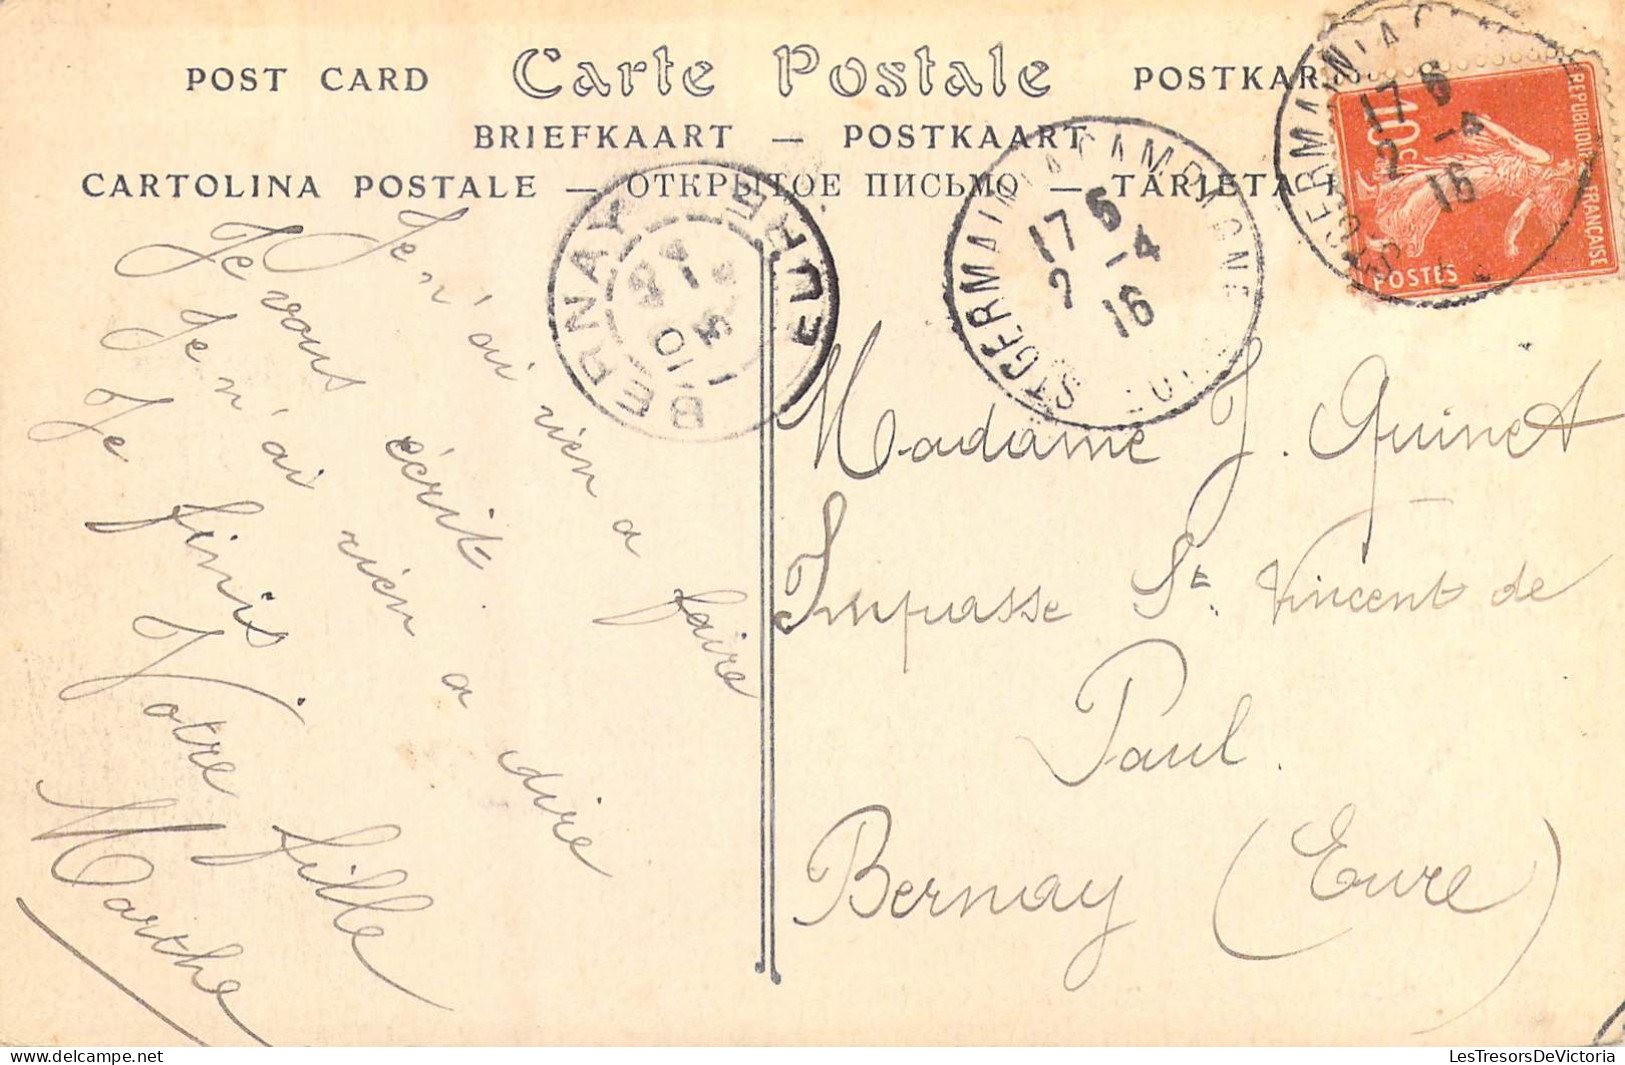 FRANCE - 14 - Vue Sur Courtonne-la-Ville - Carte Postale Ancienne - Other & Unclassified